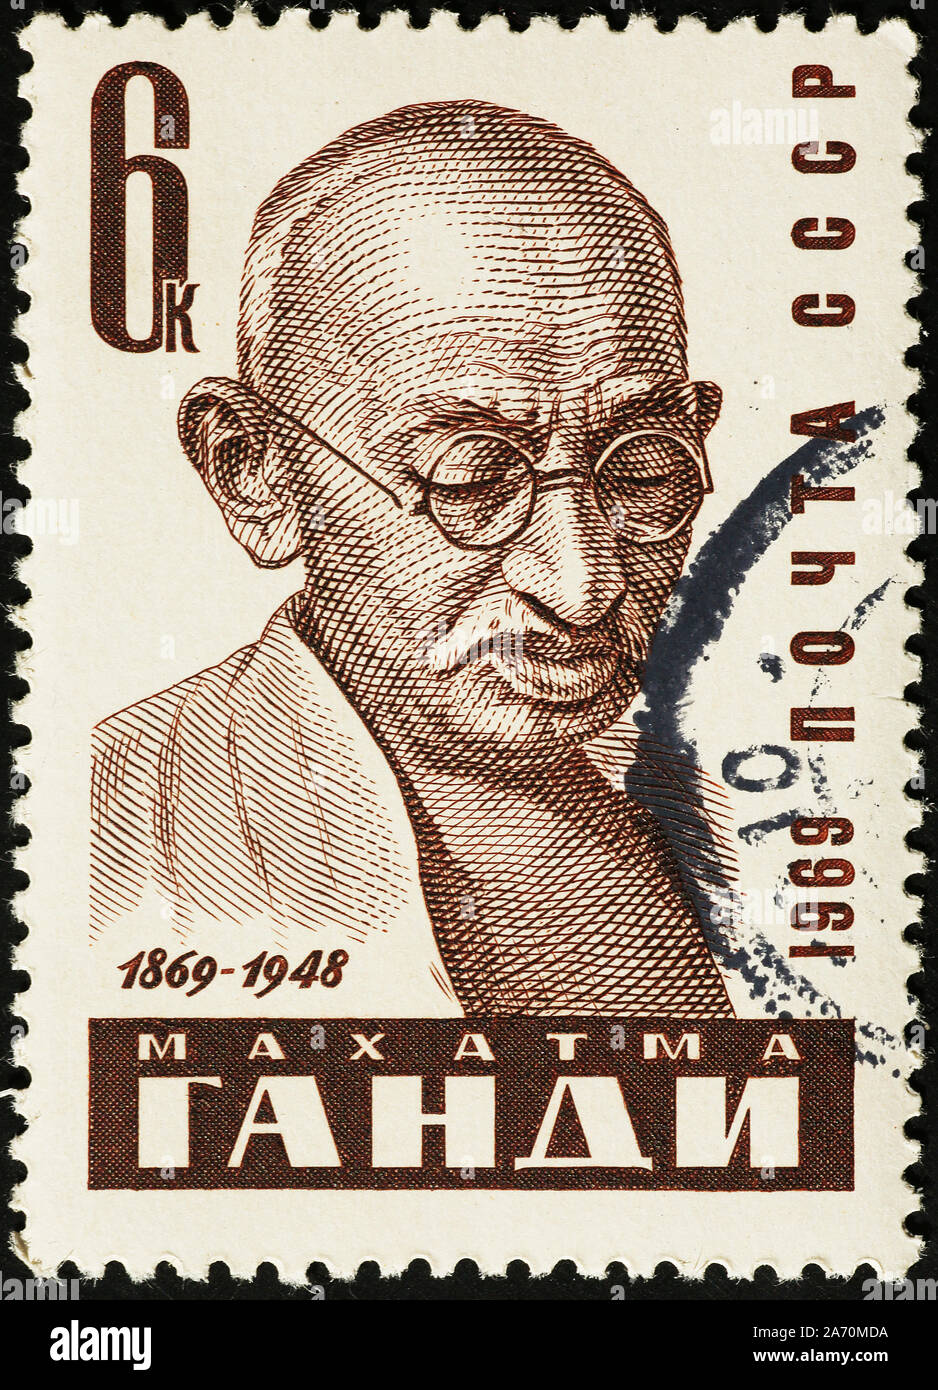 Portrait de Mahatma Gandhi sur de vieux timbres russes Banque D'Images